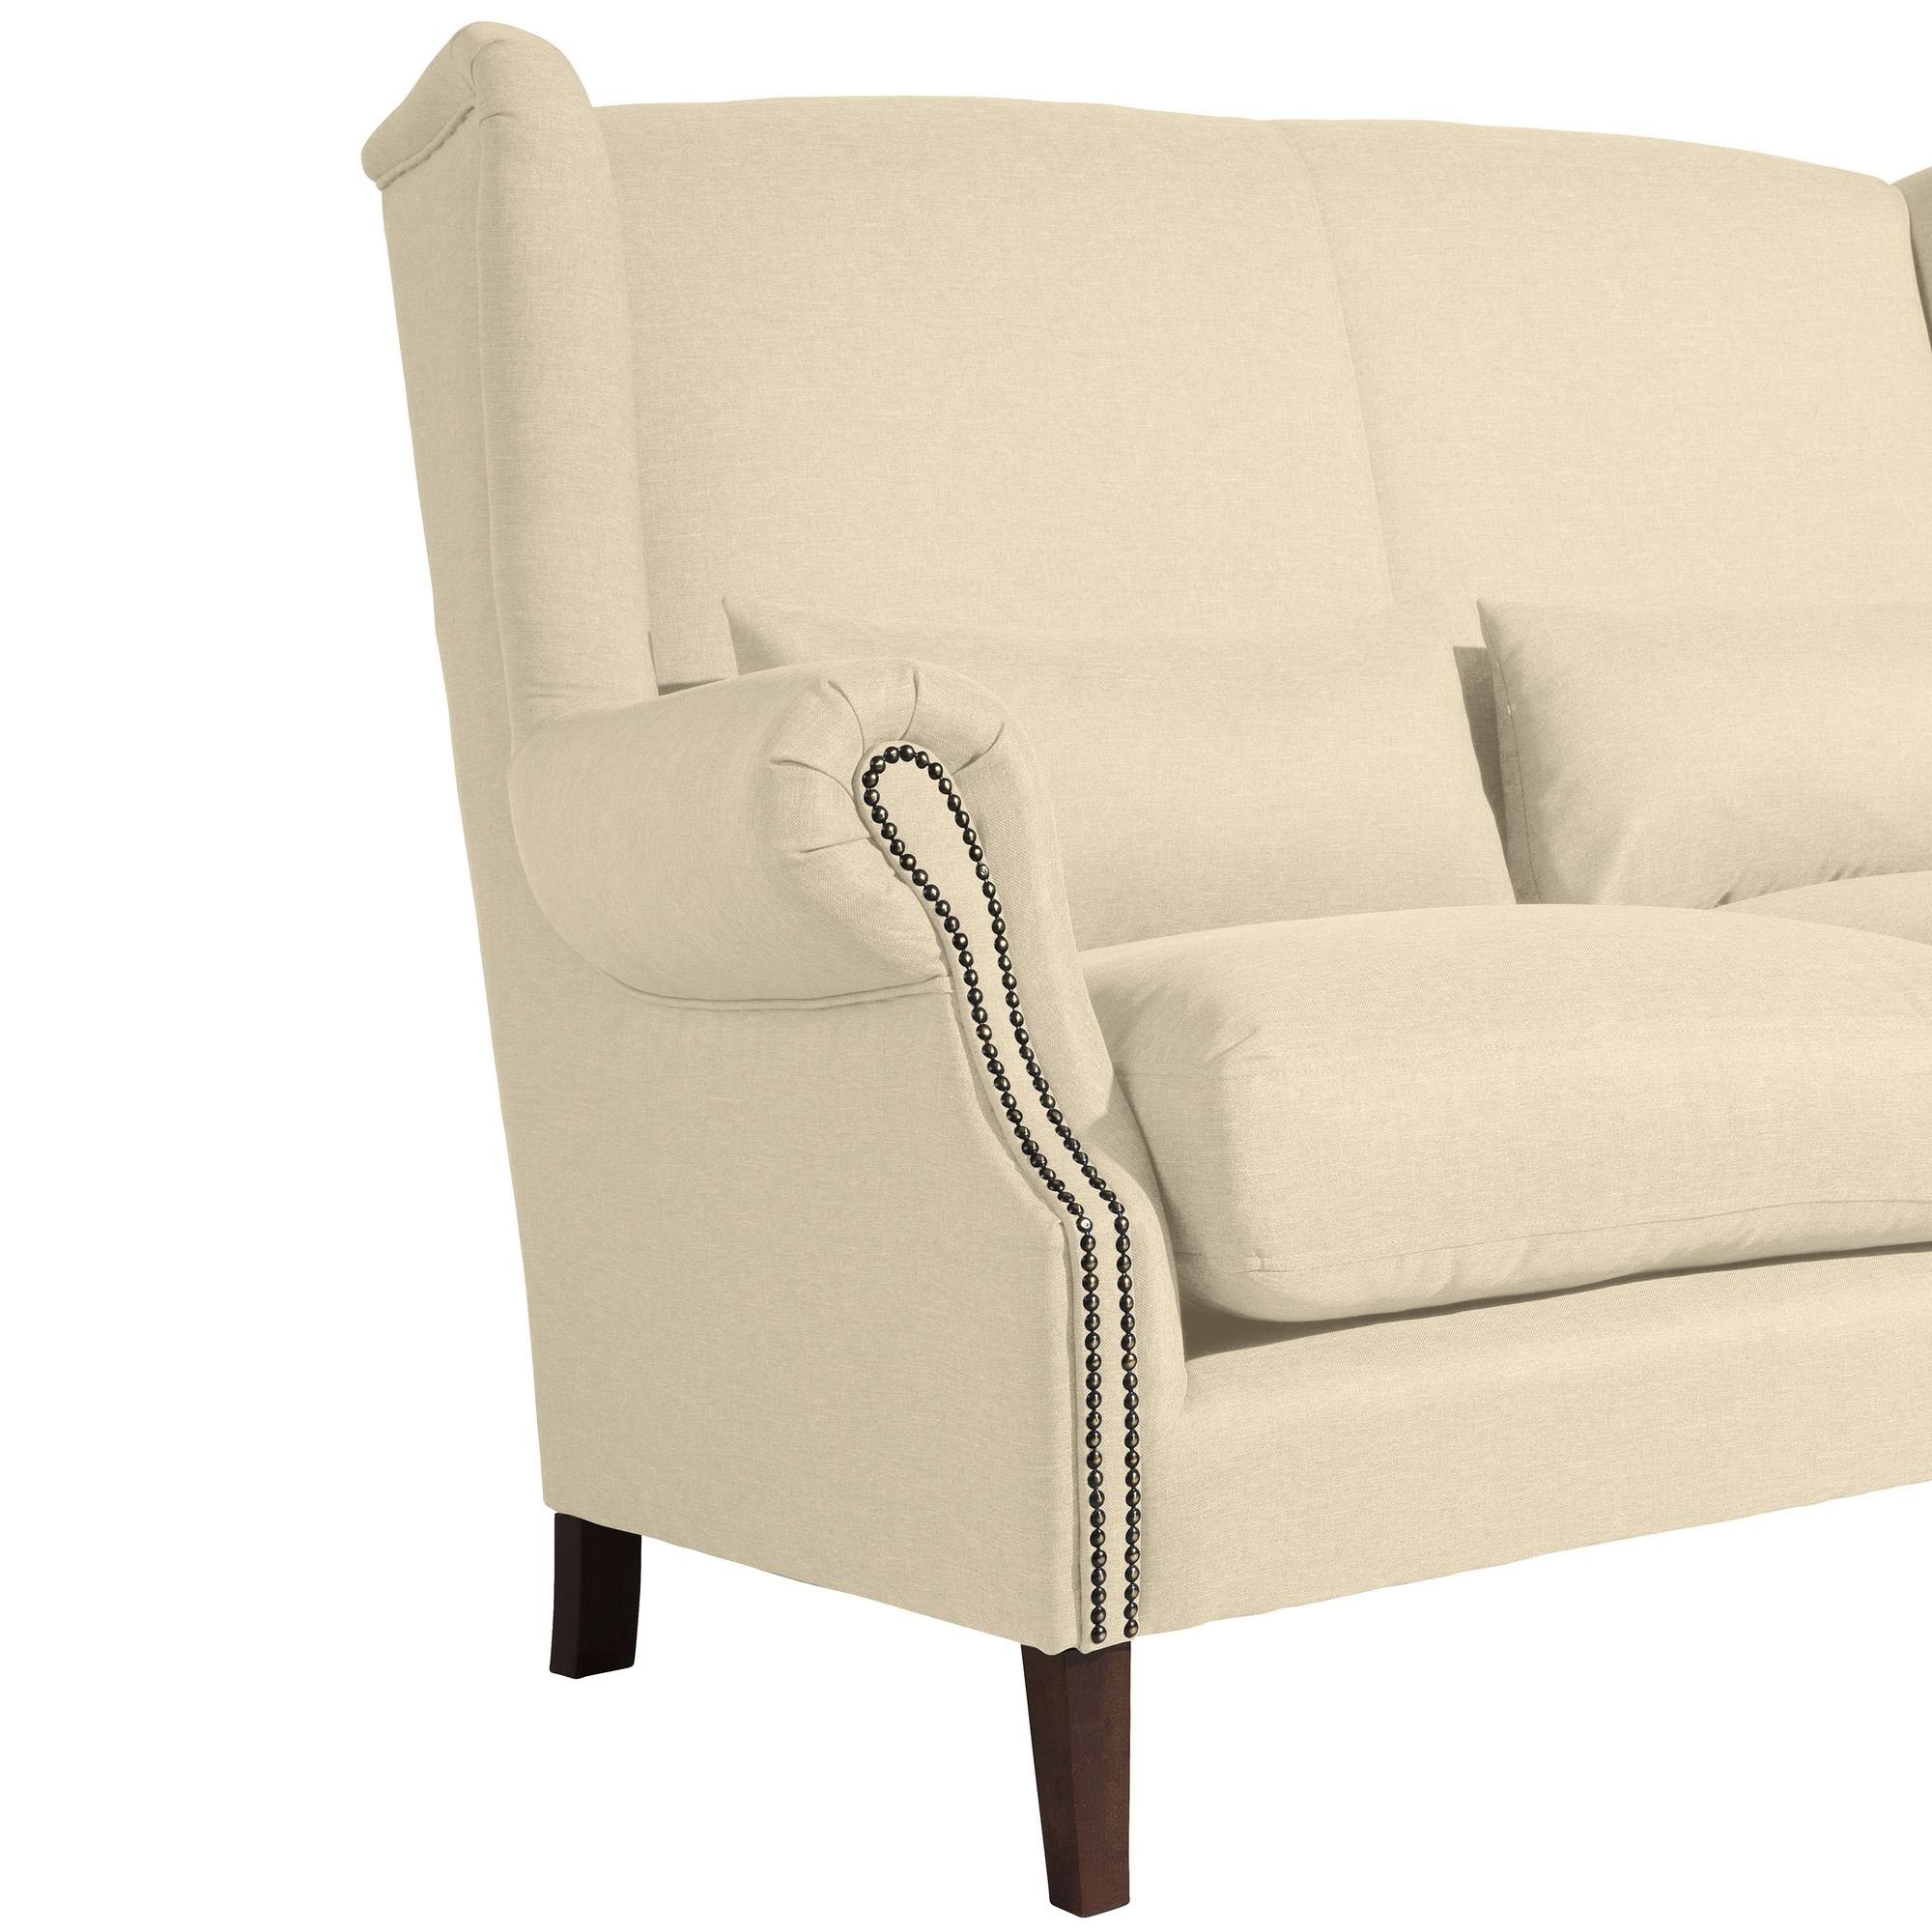 Sitz 58 Kandy 2-Sitzer Buche aufm verarbeitet,bequemer nussba, Kostenlosem Flachgewebe Teile, Sofa 1 Sparpreis Sofa hochwertig inkl. Versand Kessel Bezug